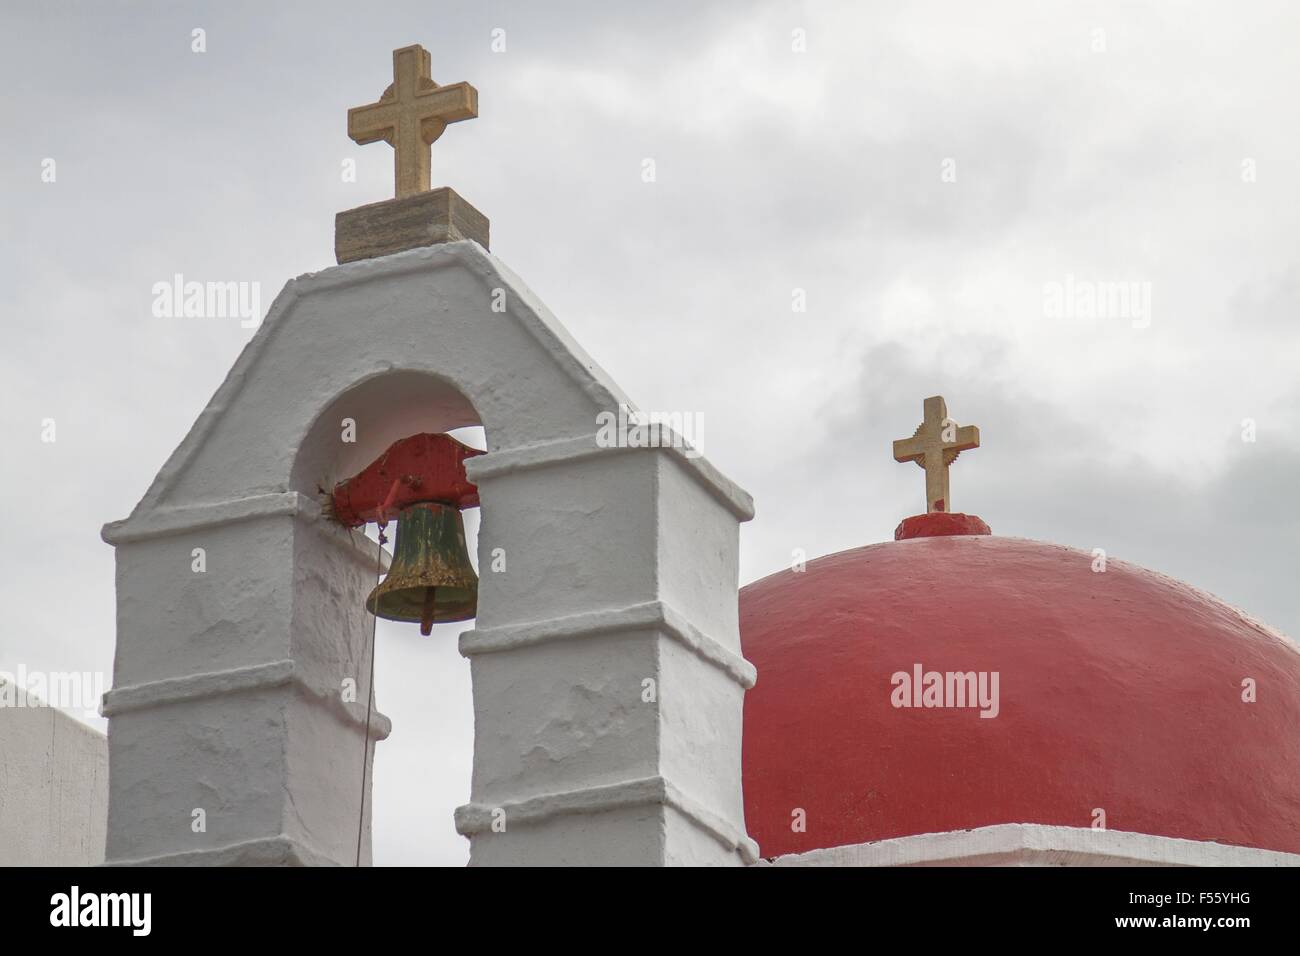 Détail de l'église avec dôme rouge à Mykonos, Grèce. Banque D'Images